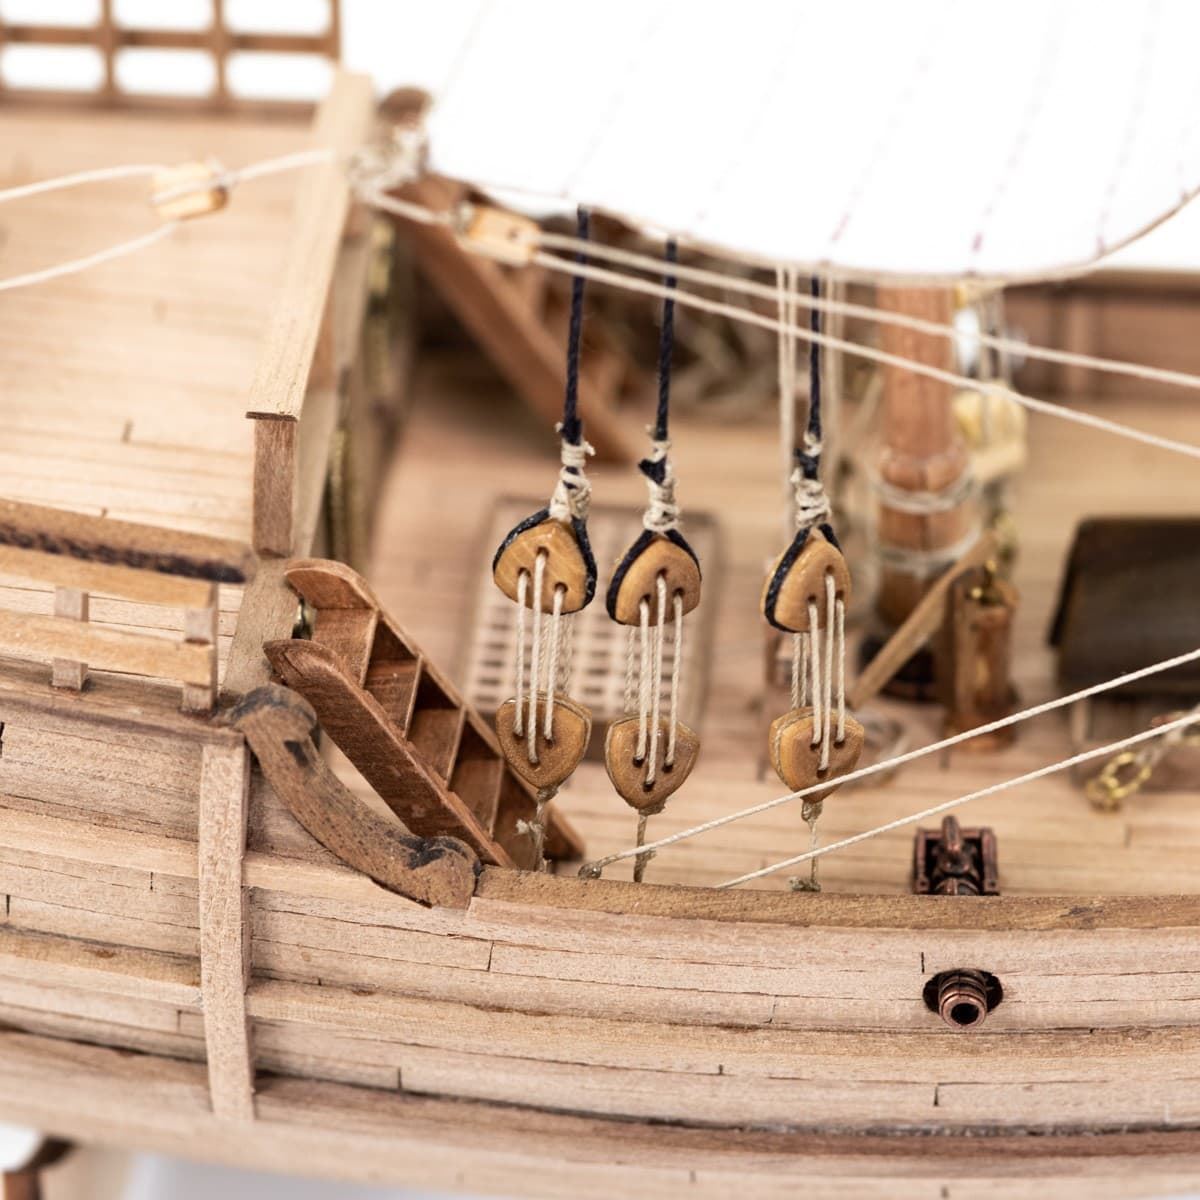 Maqueta barco de madera: Carabela Pinta - Imagen 9